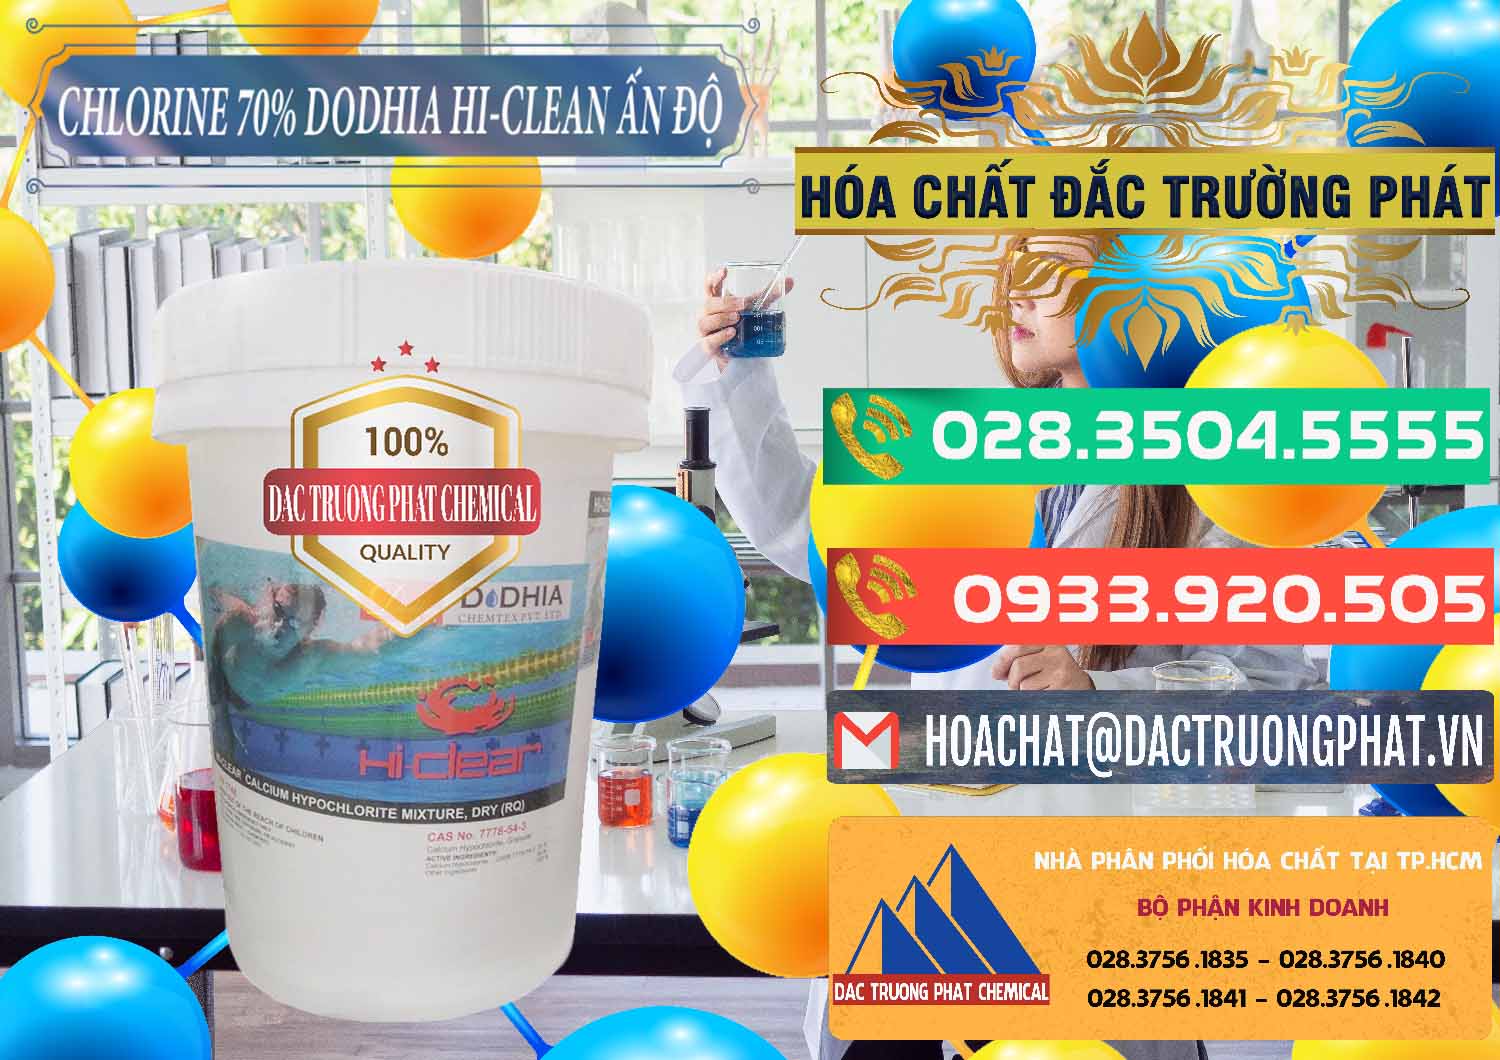 Nơi chuyên bán - phân phối Chlorine – Clorin 70% Dodhia Hi-Clean Ấn Độ India - 0214 - Cty phân phối - cung ứng hóa chất tại TP.HCM - congtyhoachat.com.vn